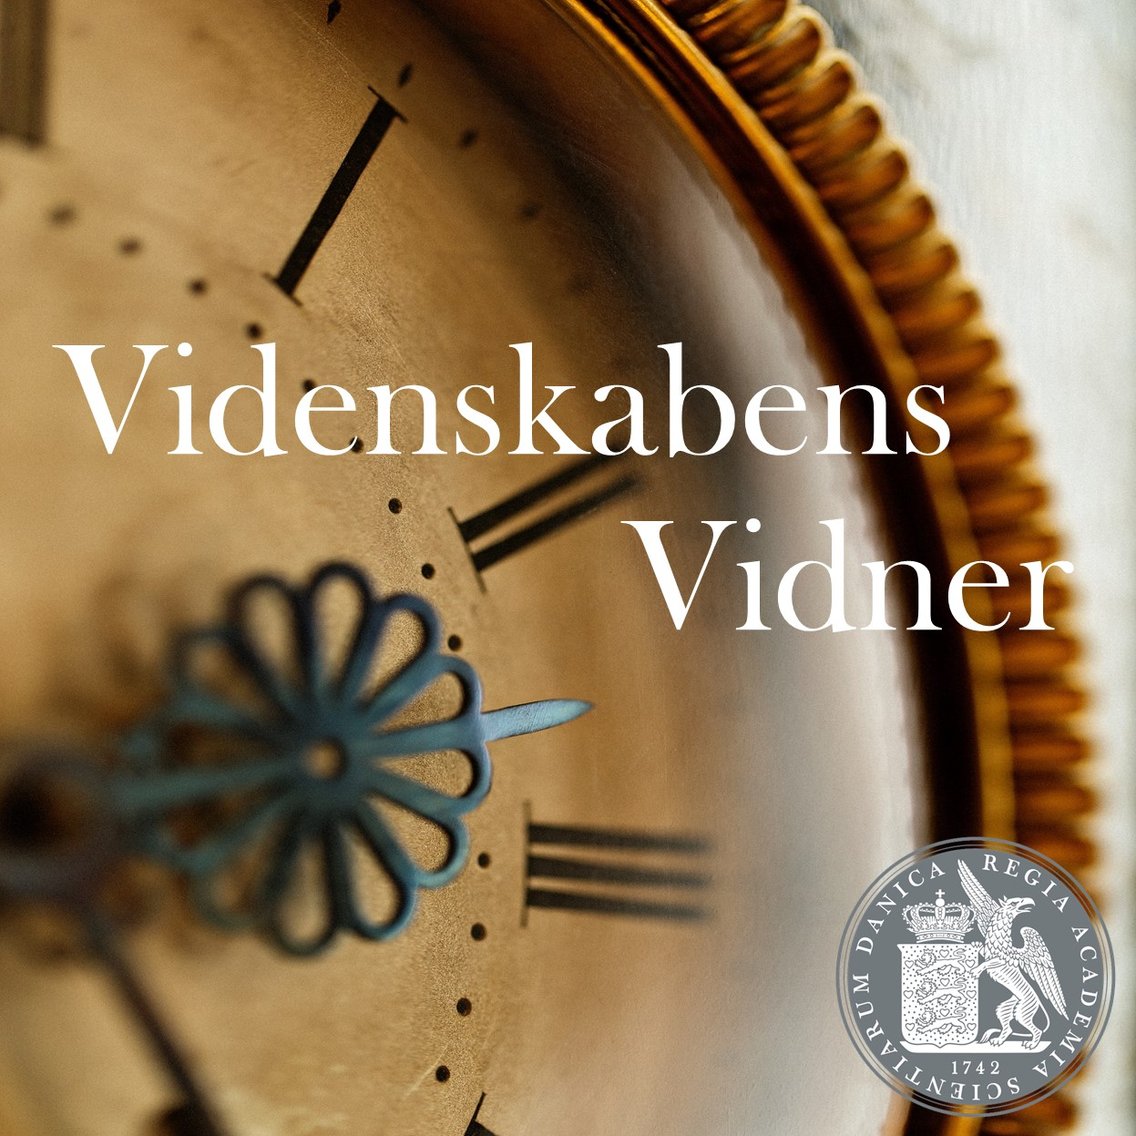 Videnskabens Vidner - Cover Image